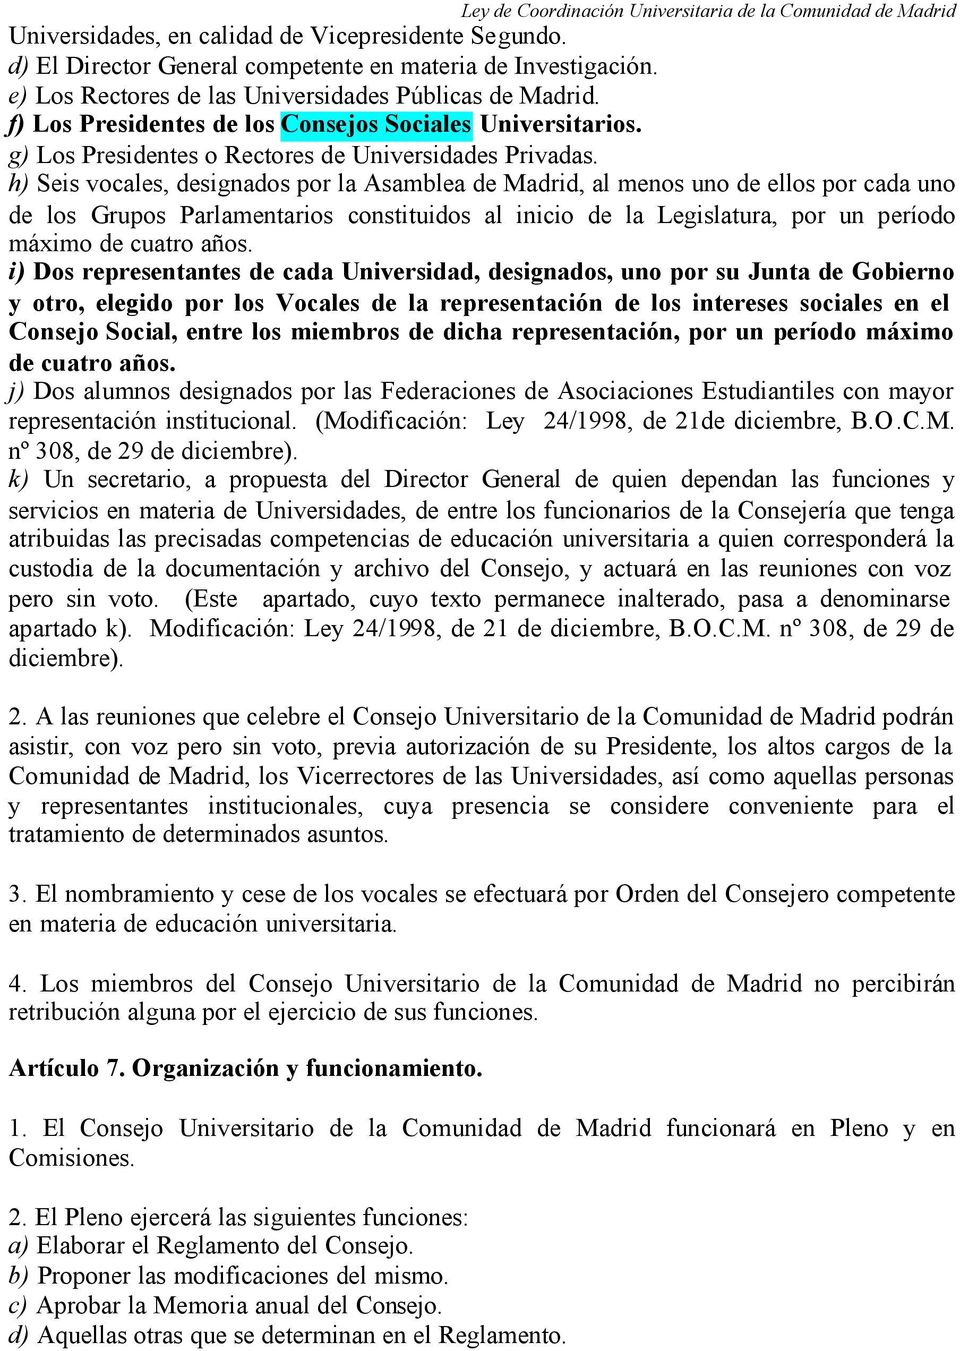 h) Seis vocales, designados por la Asamblea de Madrid, al menos uno de ellos por cada uno de los Grupos Parlamentarios constituidos al inicio de la Legislatura, por un período máximo de cuatro años.